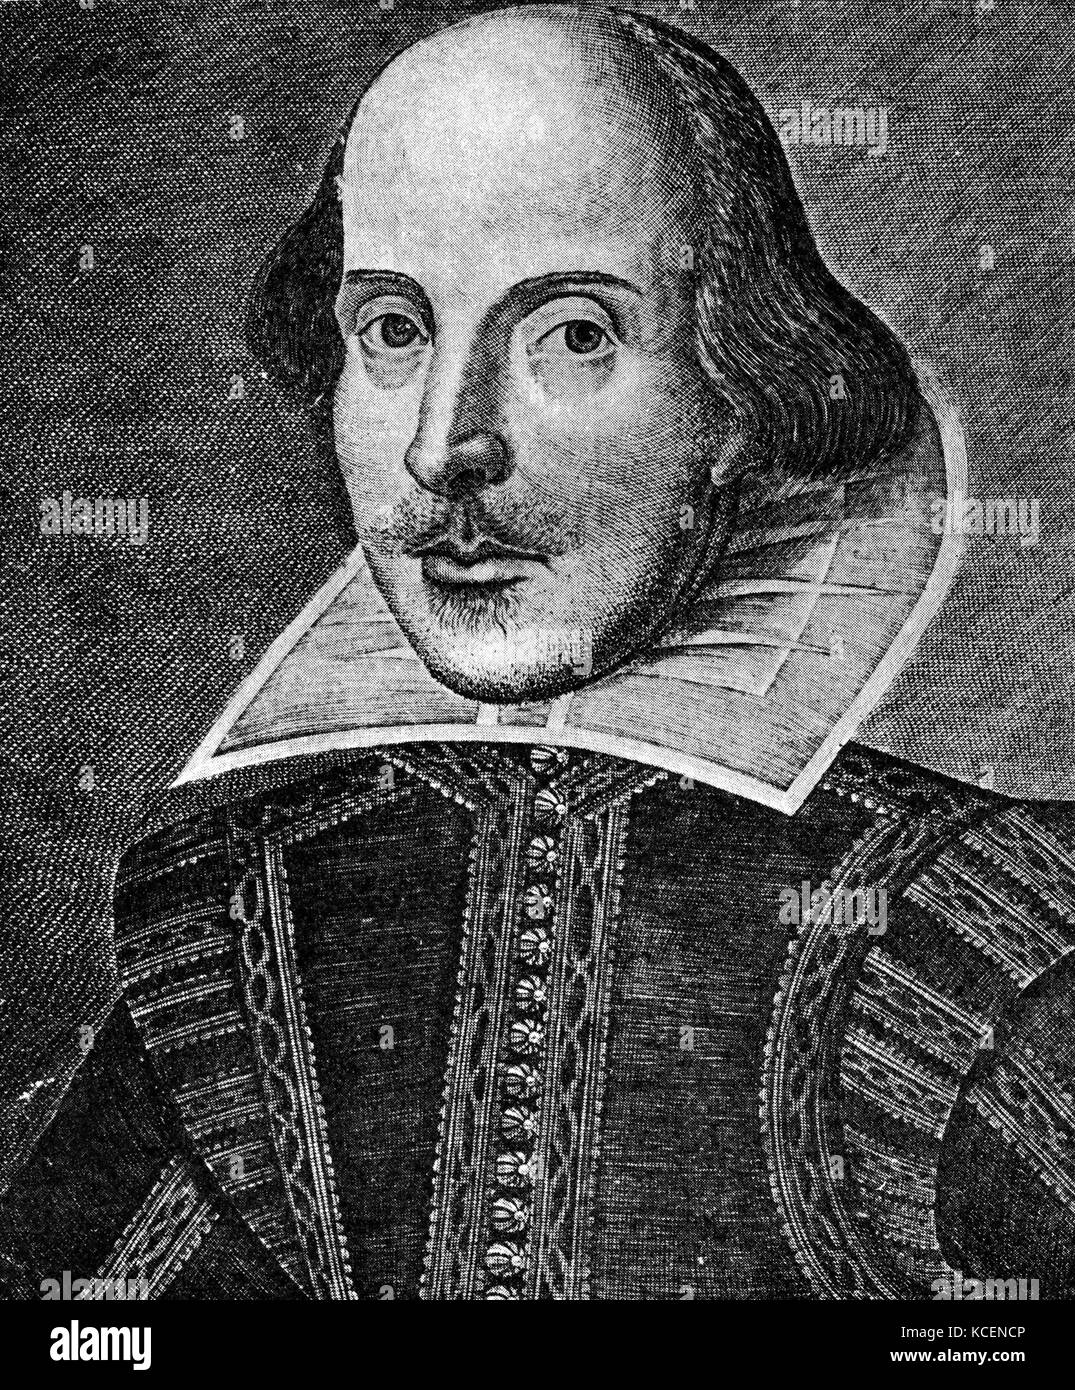 Porträt von William Shakespeare (1564-1616), englischer Dichter, Dramatiker und Schauspieler. Vom 17. Jahrhundert Stockfoto